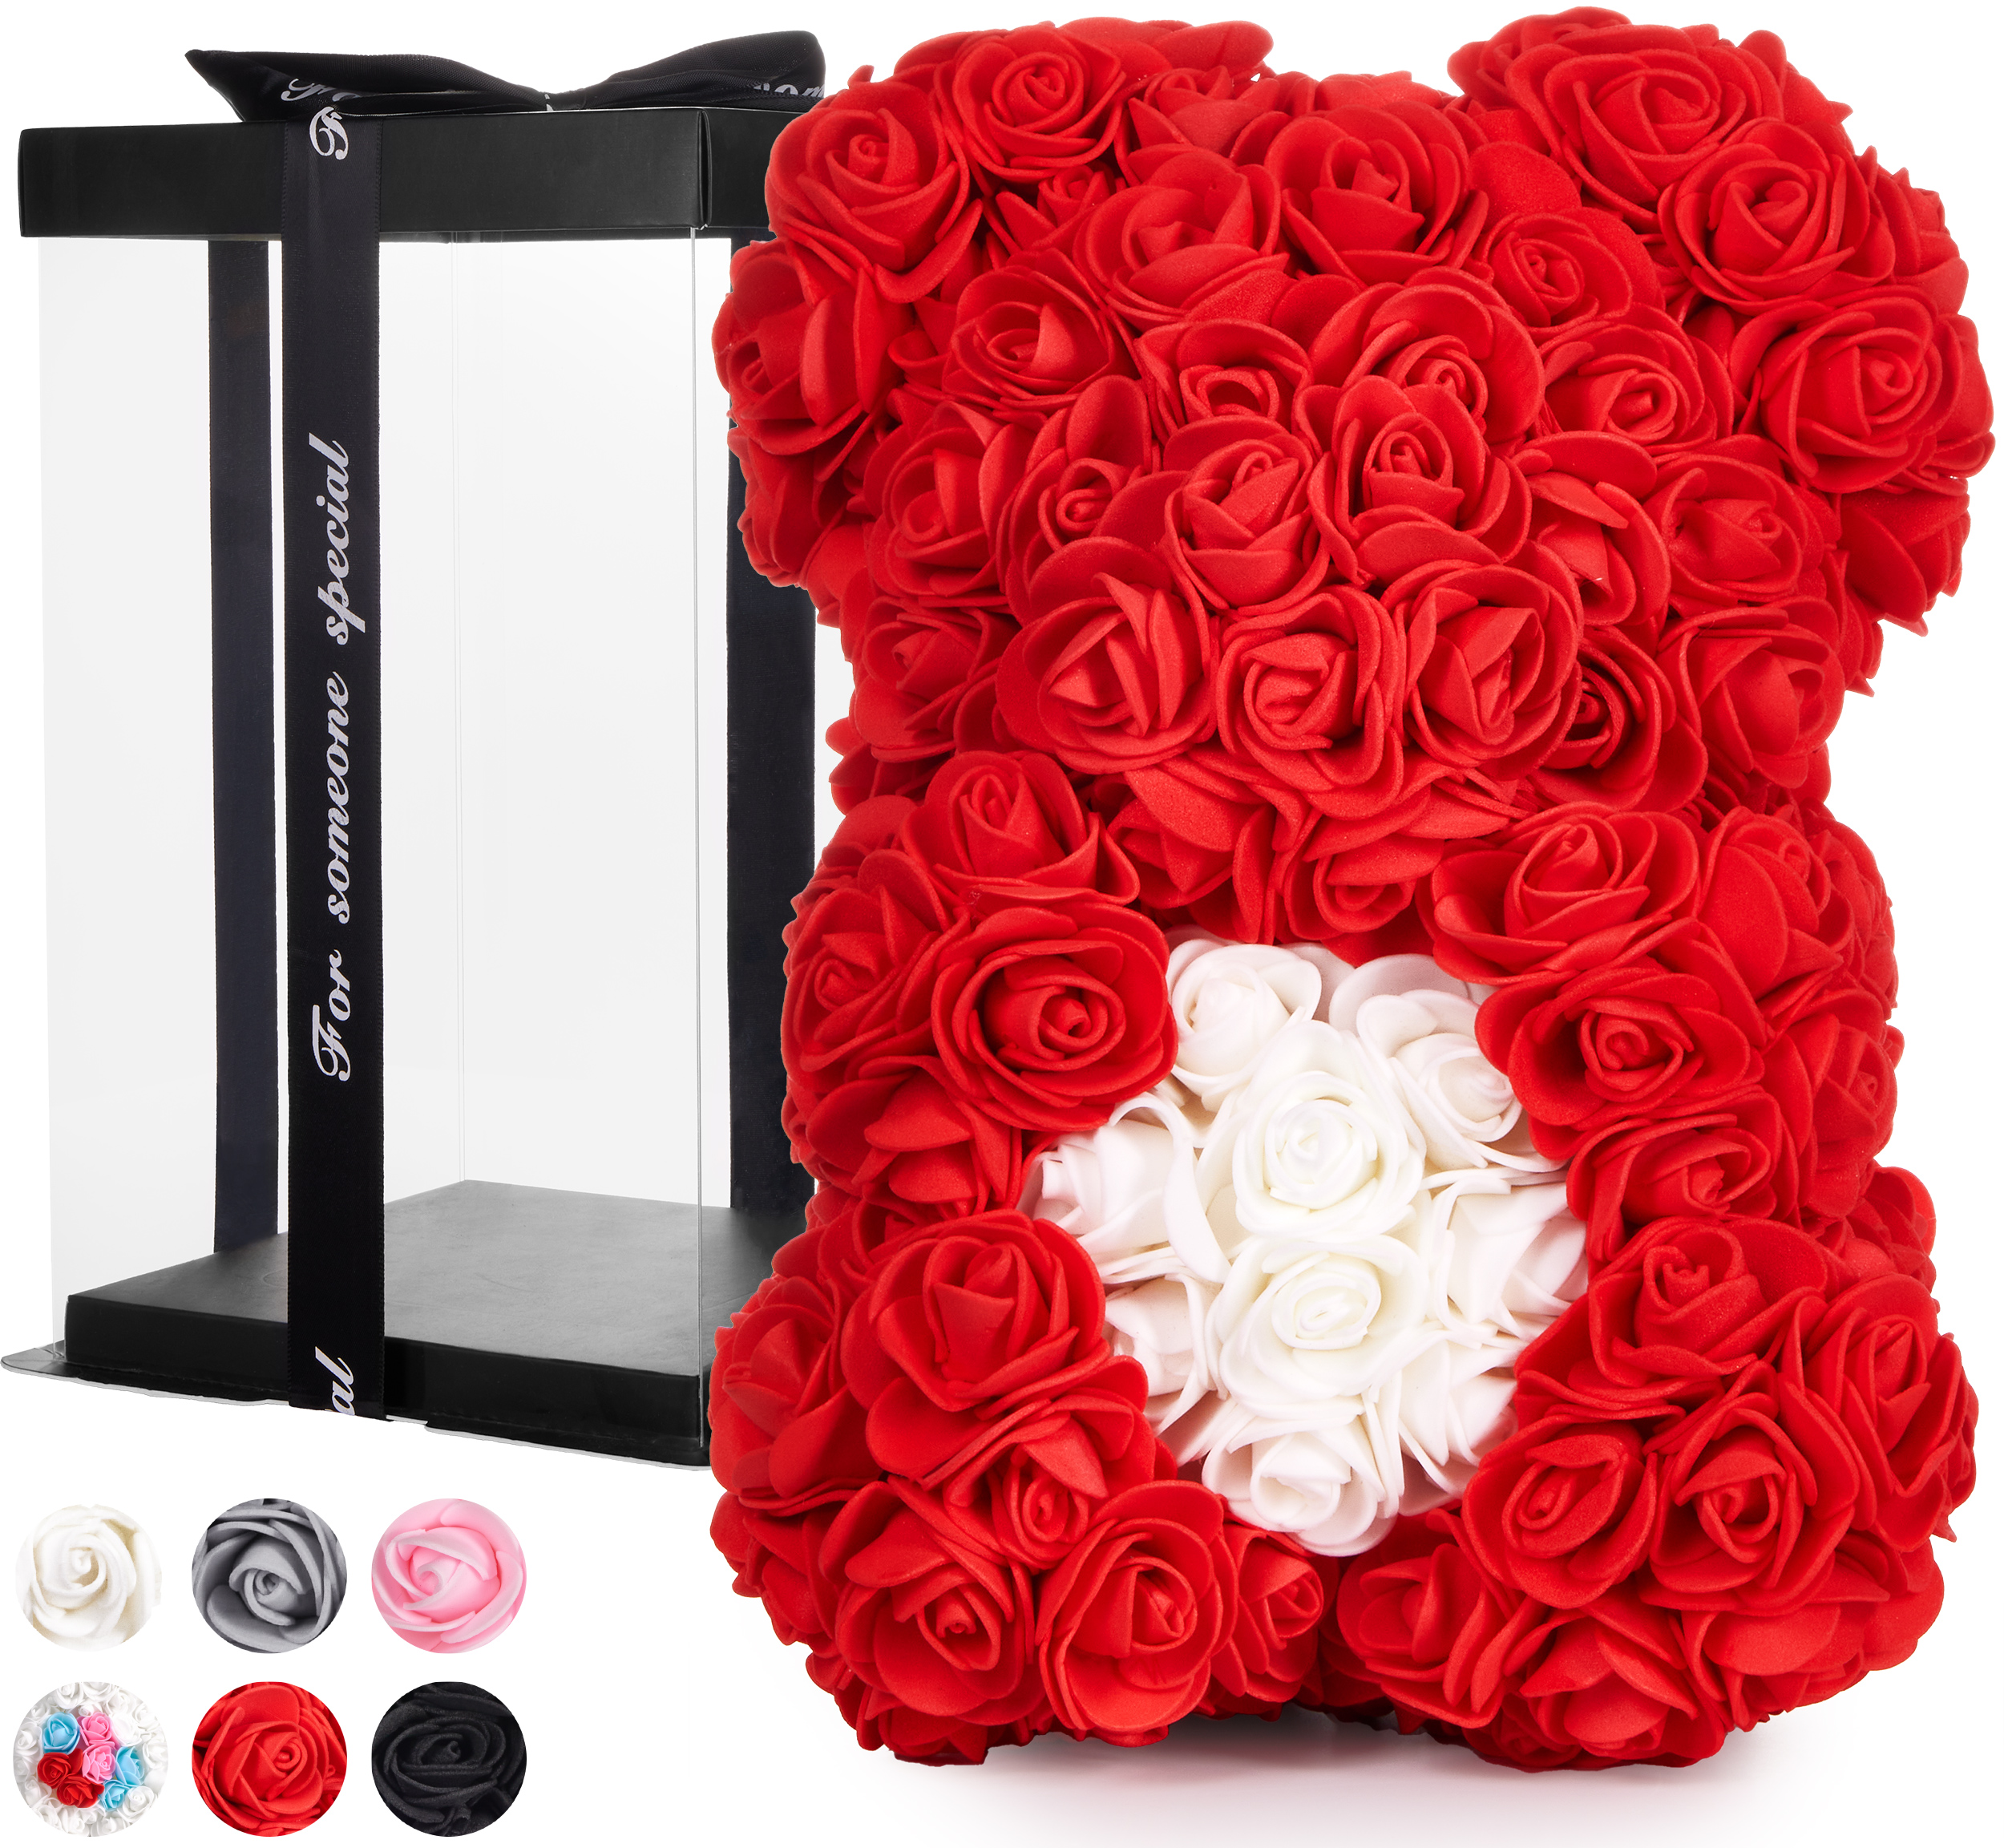 25cm Foam Rose Teddy bär Blume Geschenk Valentinstag Love Geburtstag Hochzeit 